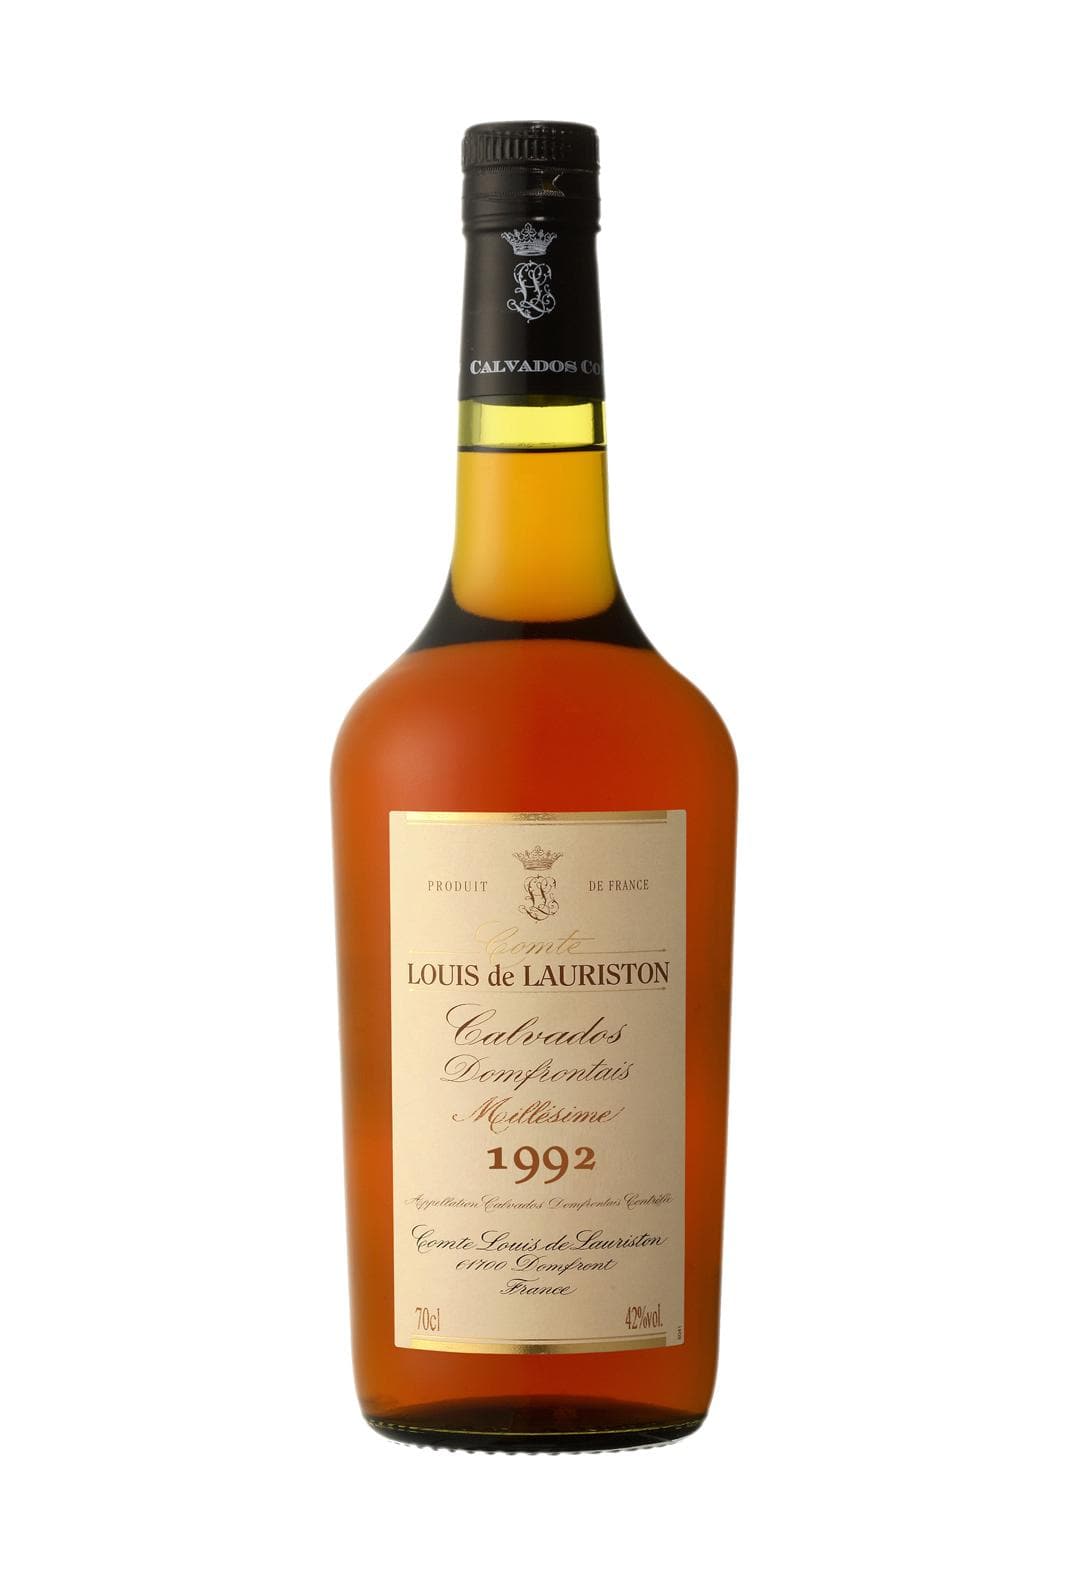 Comte Louis de Lauriston Calvados Domfrontais 1992 42% 700ml | Brandy | Shop online at Spirits of France